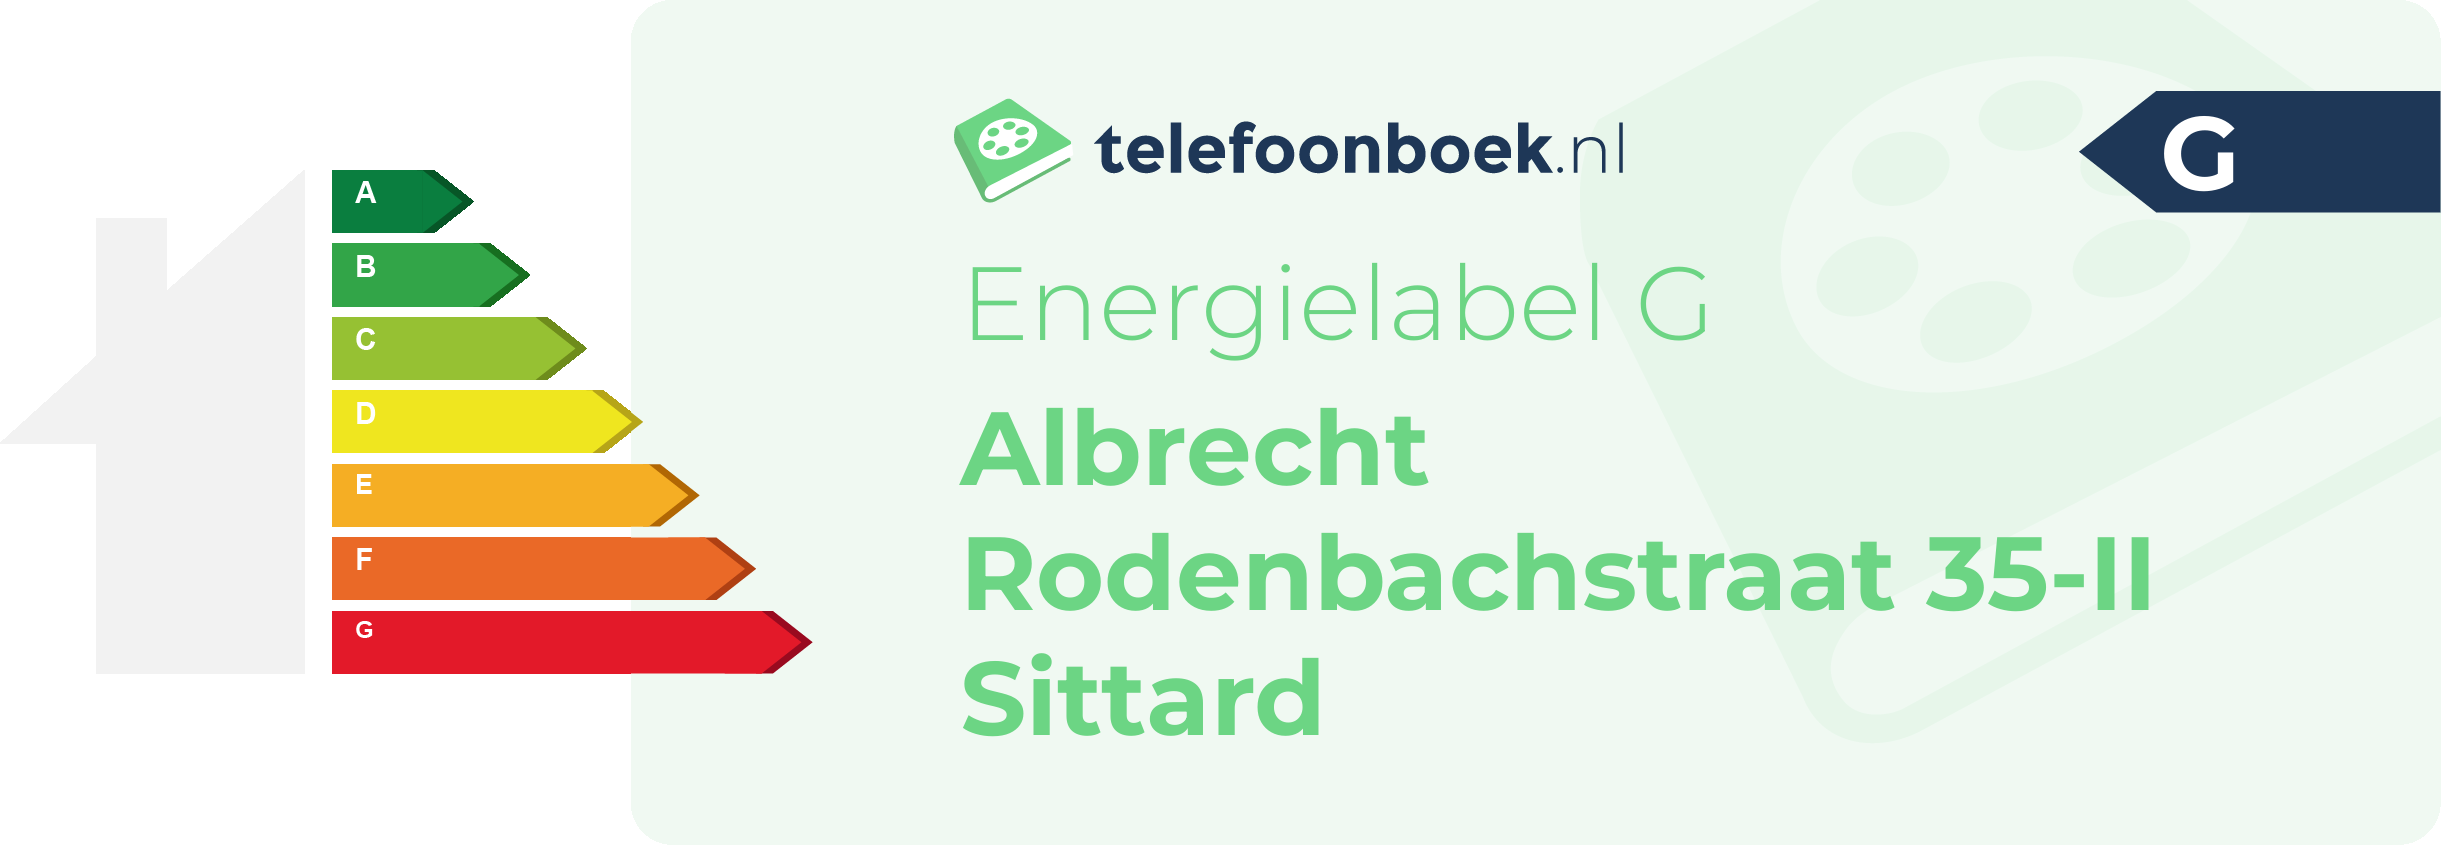 Energielabel Albrecht Rodenbachstraat 35-II Sittard